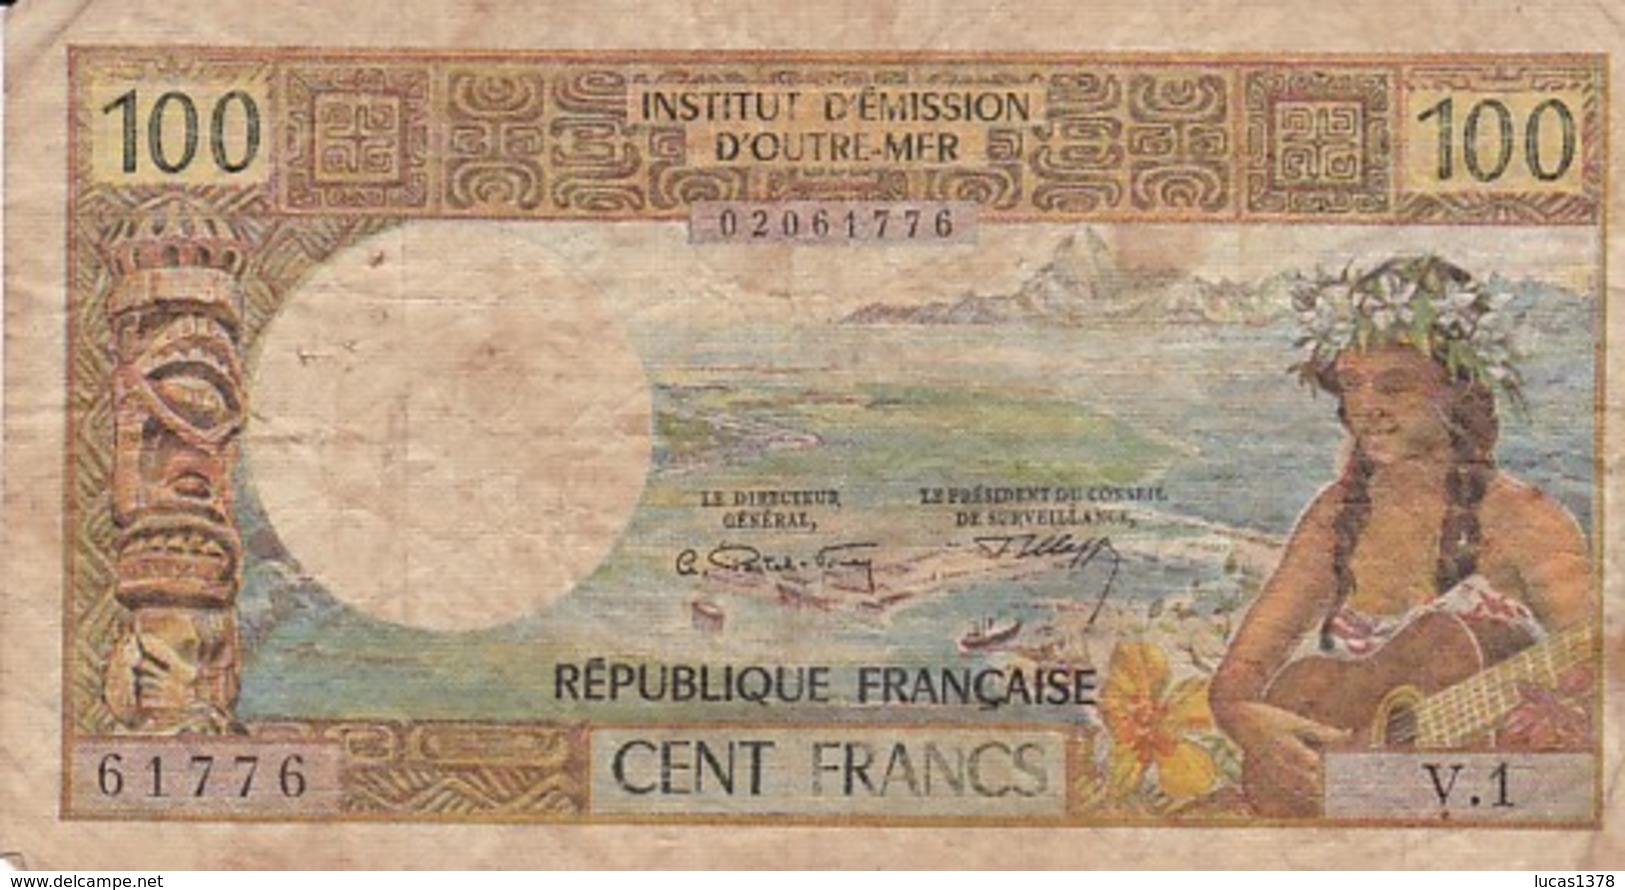 BILLET DE 100 FRANCS INSTITUT D'EMISSION D'OUTRE-MER PAPEETE - Papeete (French Polynesia 1914-1985)